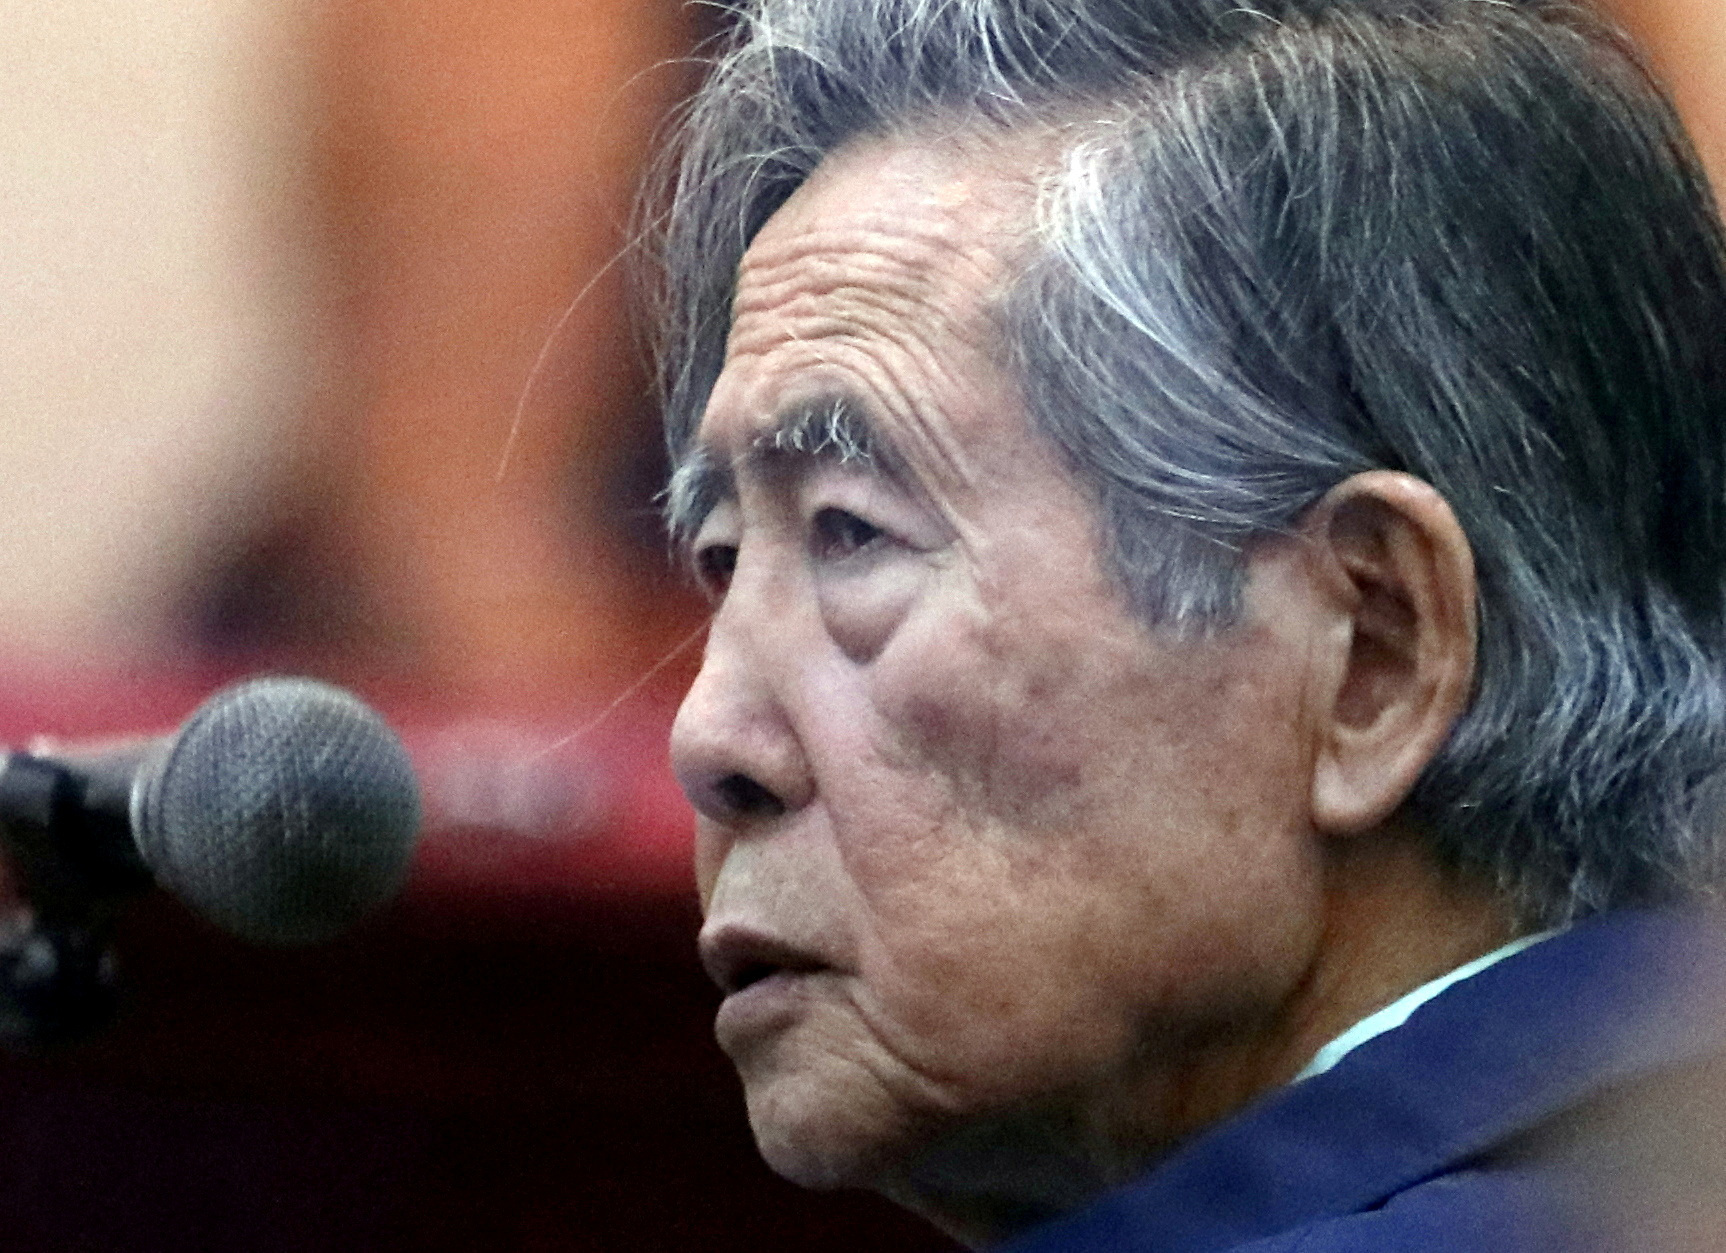 FOTO DE ARCHIVO: El expresidente de Perú Alberto Fujimori asiste a un juicio como testigo en la base naval de Callao, Perú, el 15 de marzo de 2018. Fotografía tomada a través de una ventana. REUTERS/Mariana Bazo//File Photo